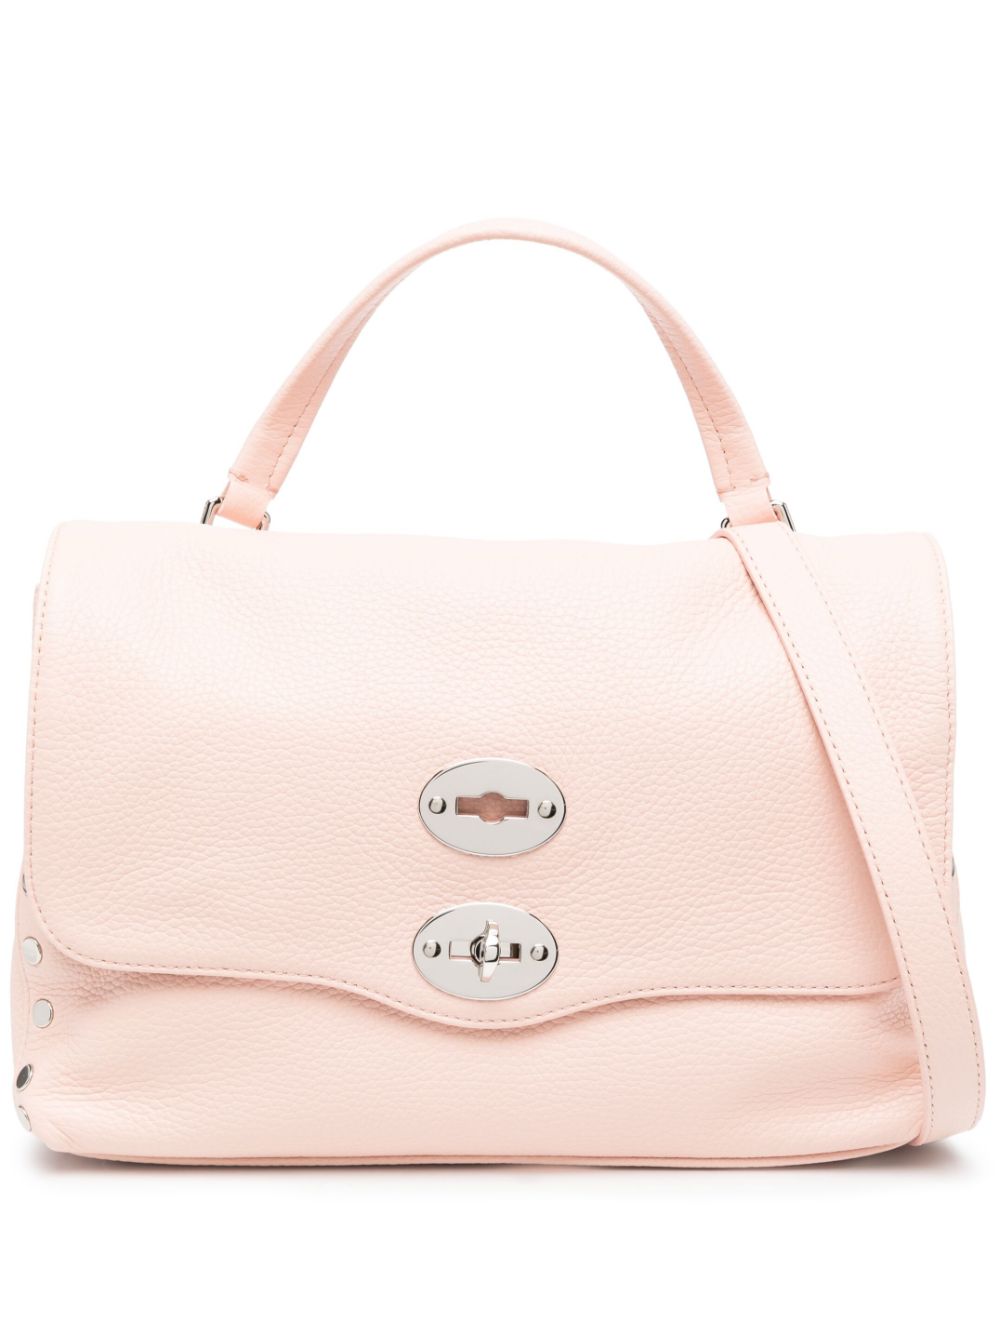 Zanellato Postina Leather Tote Bag In Pink